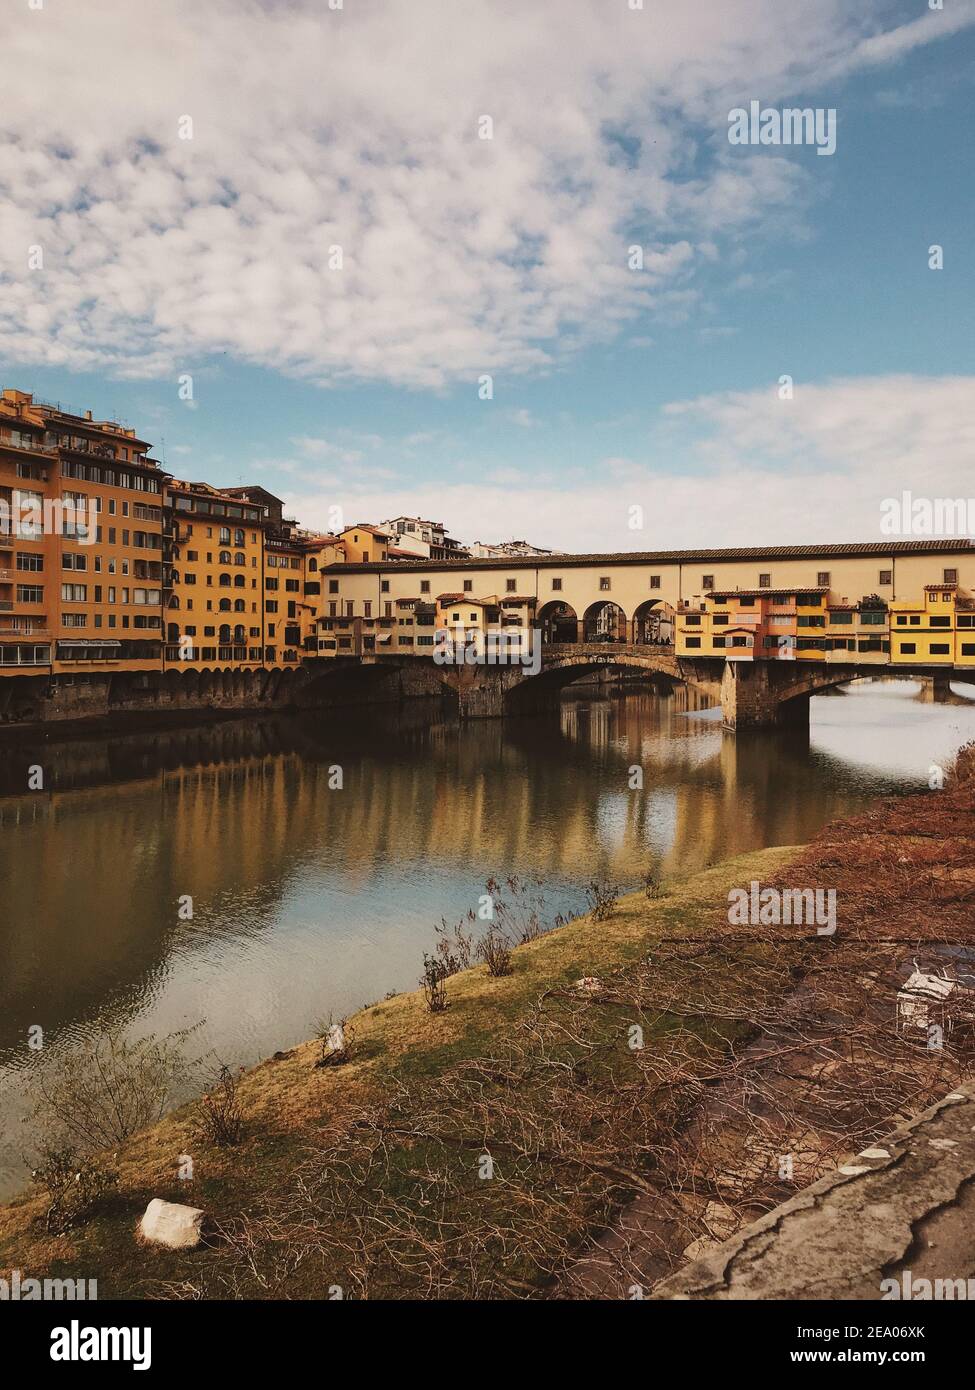 Schöner Blick auf den mittelalterlichen, geschlossenen Segmentierbogen Ponte Vecchio Brücke in Florenz Stockfoto